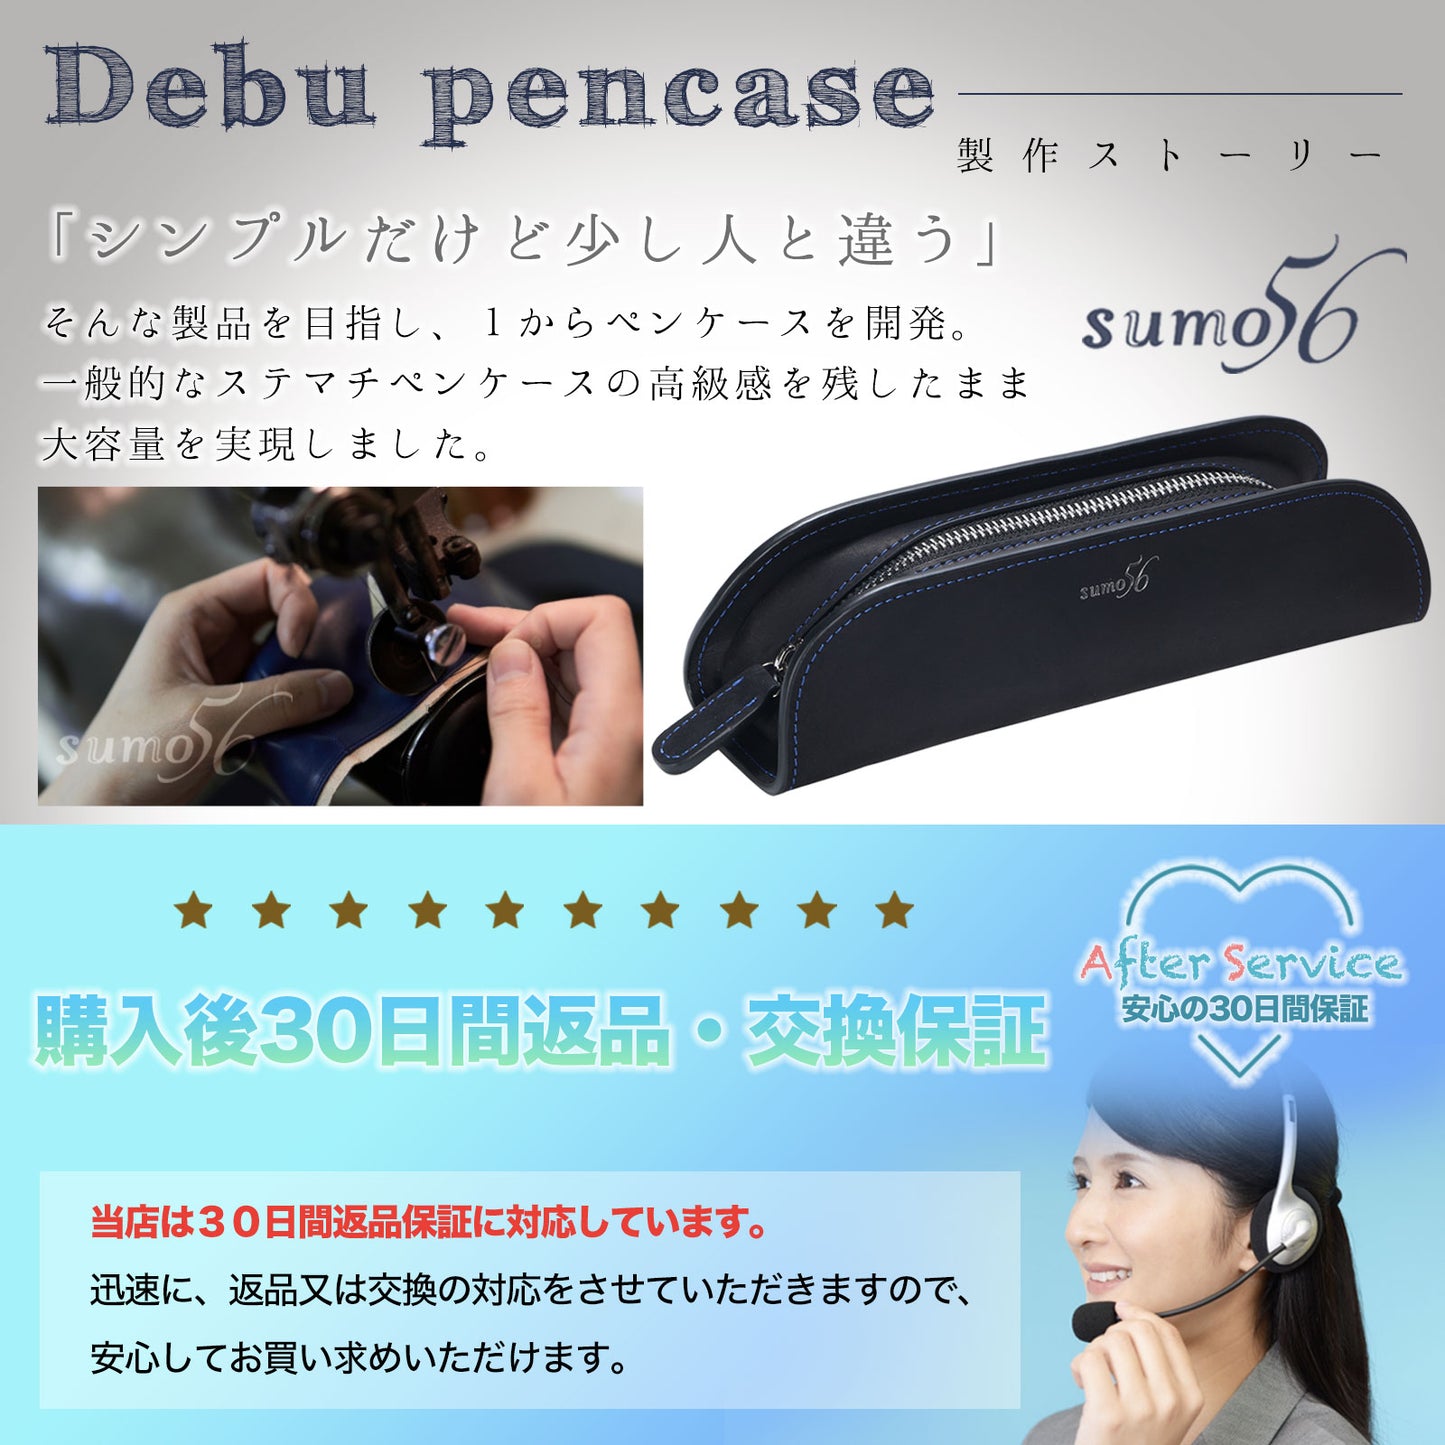 【アウトレット】sumo56 デブペンケース(外箱なし)